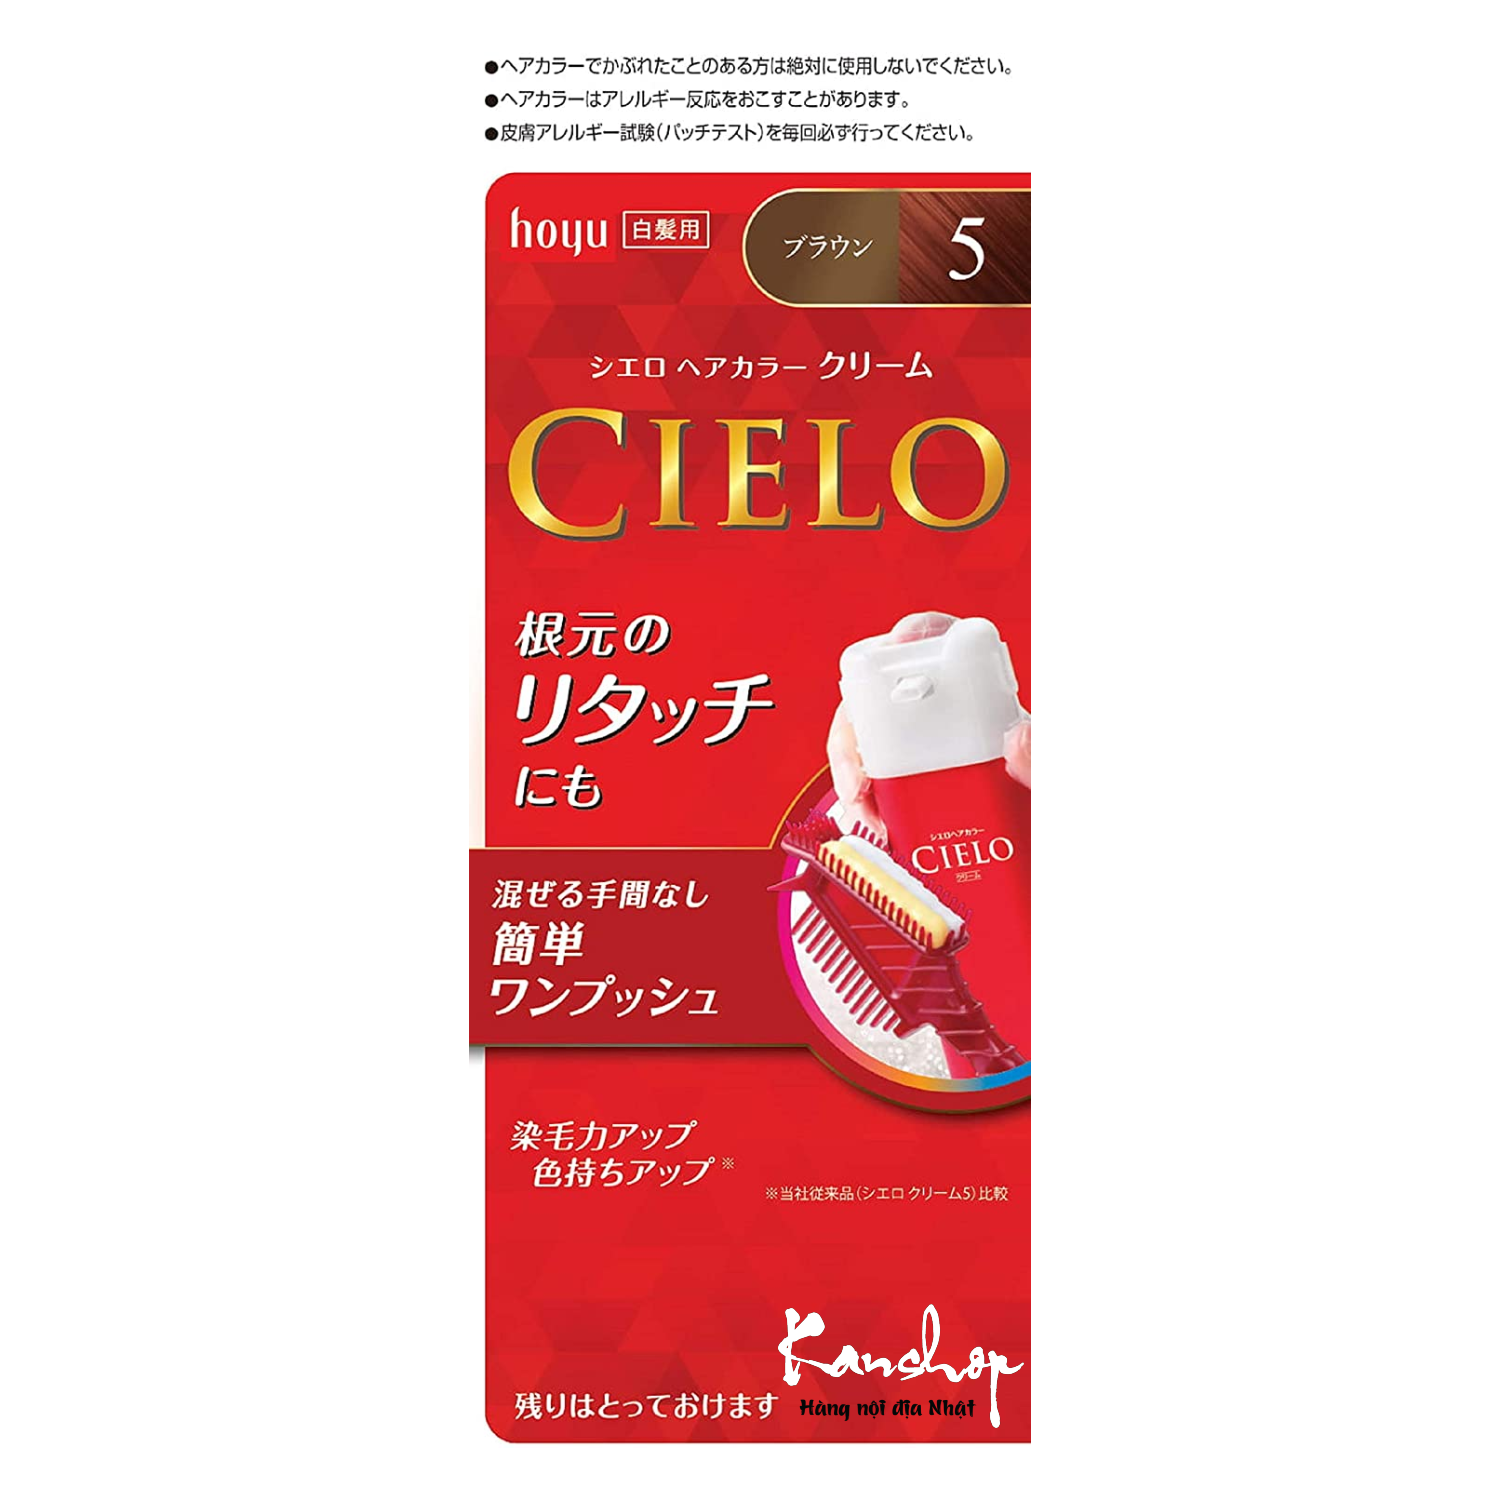 Khám phá ngay Thuốc nhuộm tóc Cielo Nhật Bản loại 5p với giá cực kỳ ưu đãi. Các tính năng vượt trội và hiệu quả mà sản phẩm mang lại sẽ làm bạn hài lòng. Đừng bỏ lỡ cơ hội giảm giá này, hãy xem hình ảnh sản phẩm để hiểu rõ.